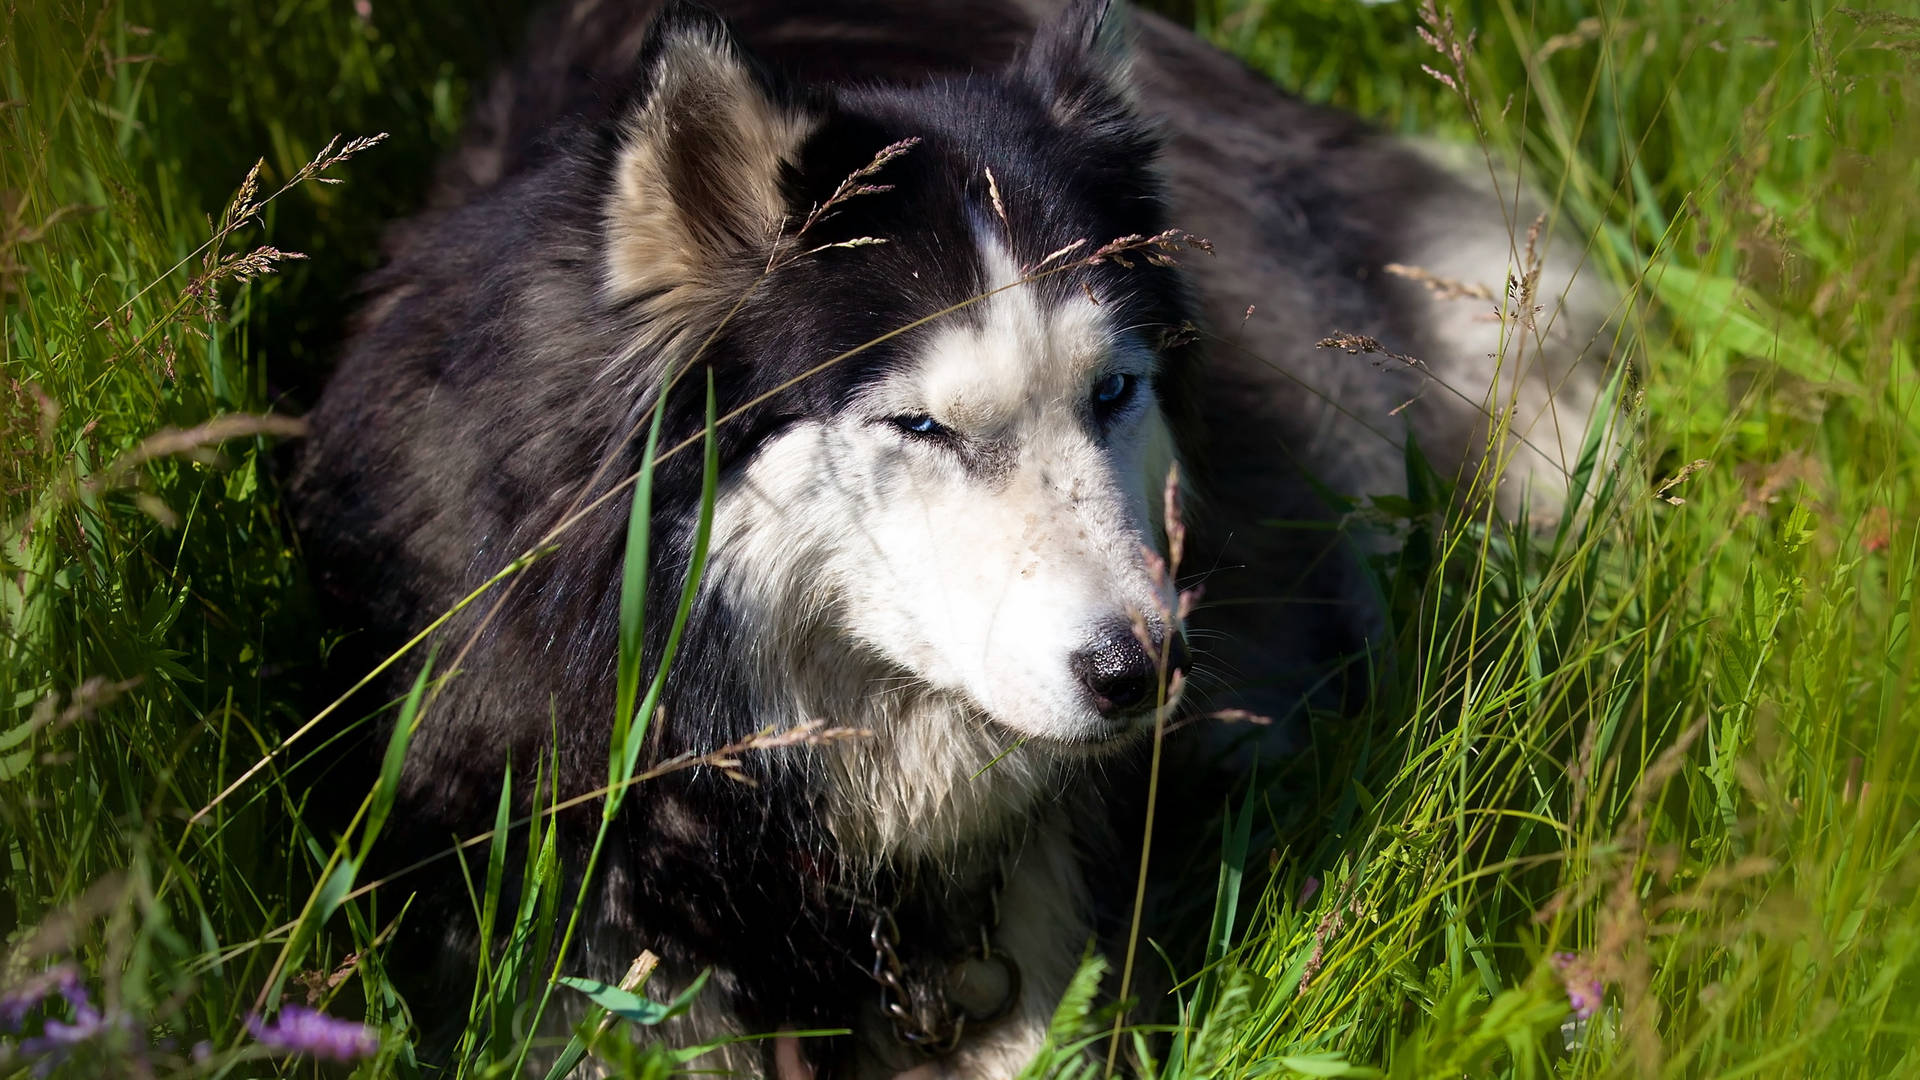 Cute Alaskan Malamute Dog On Grass